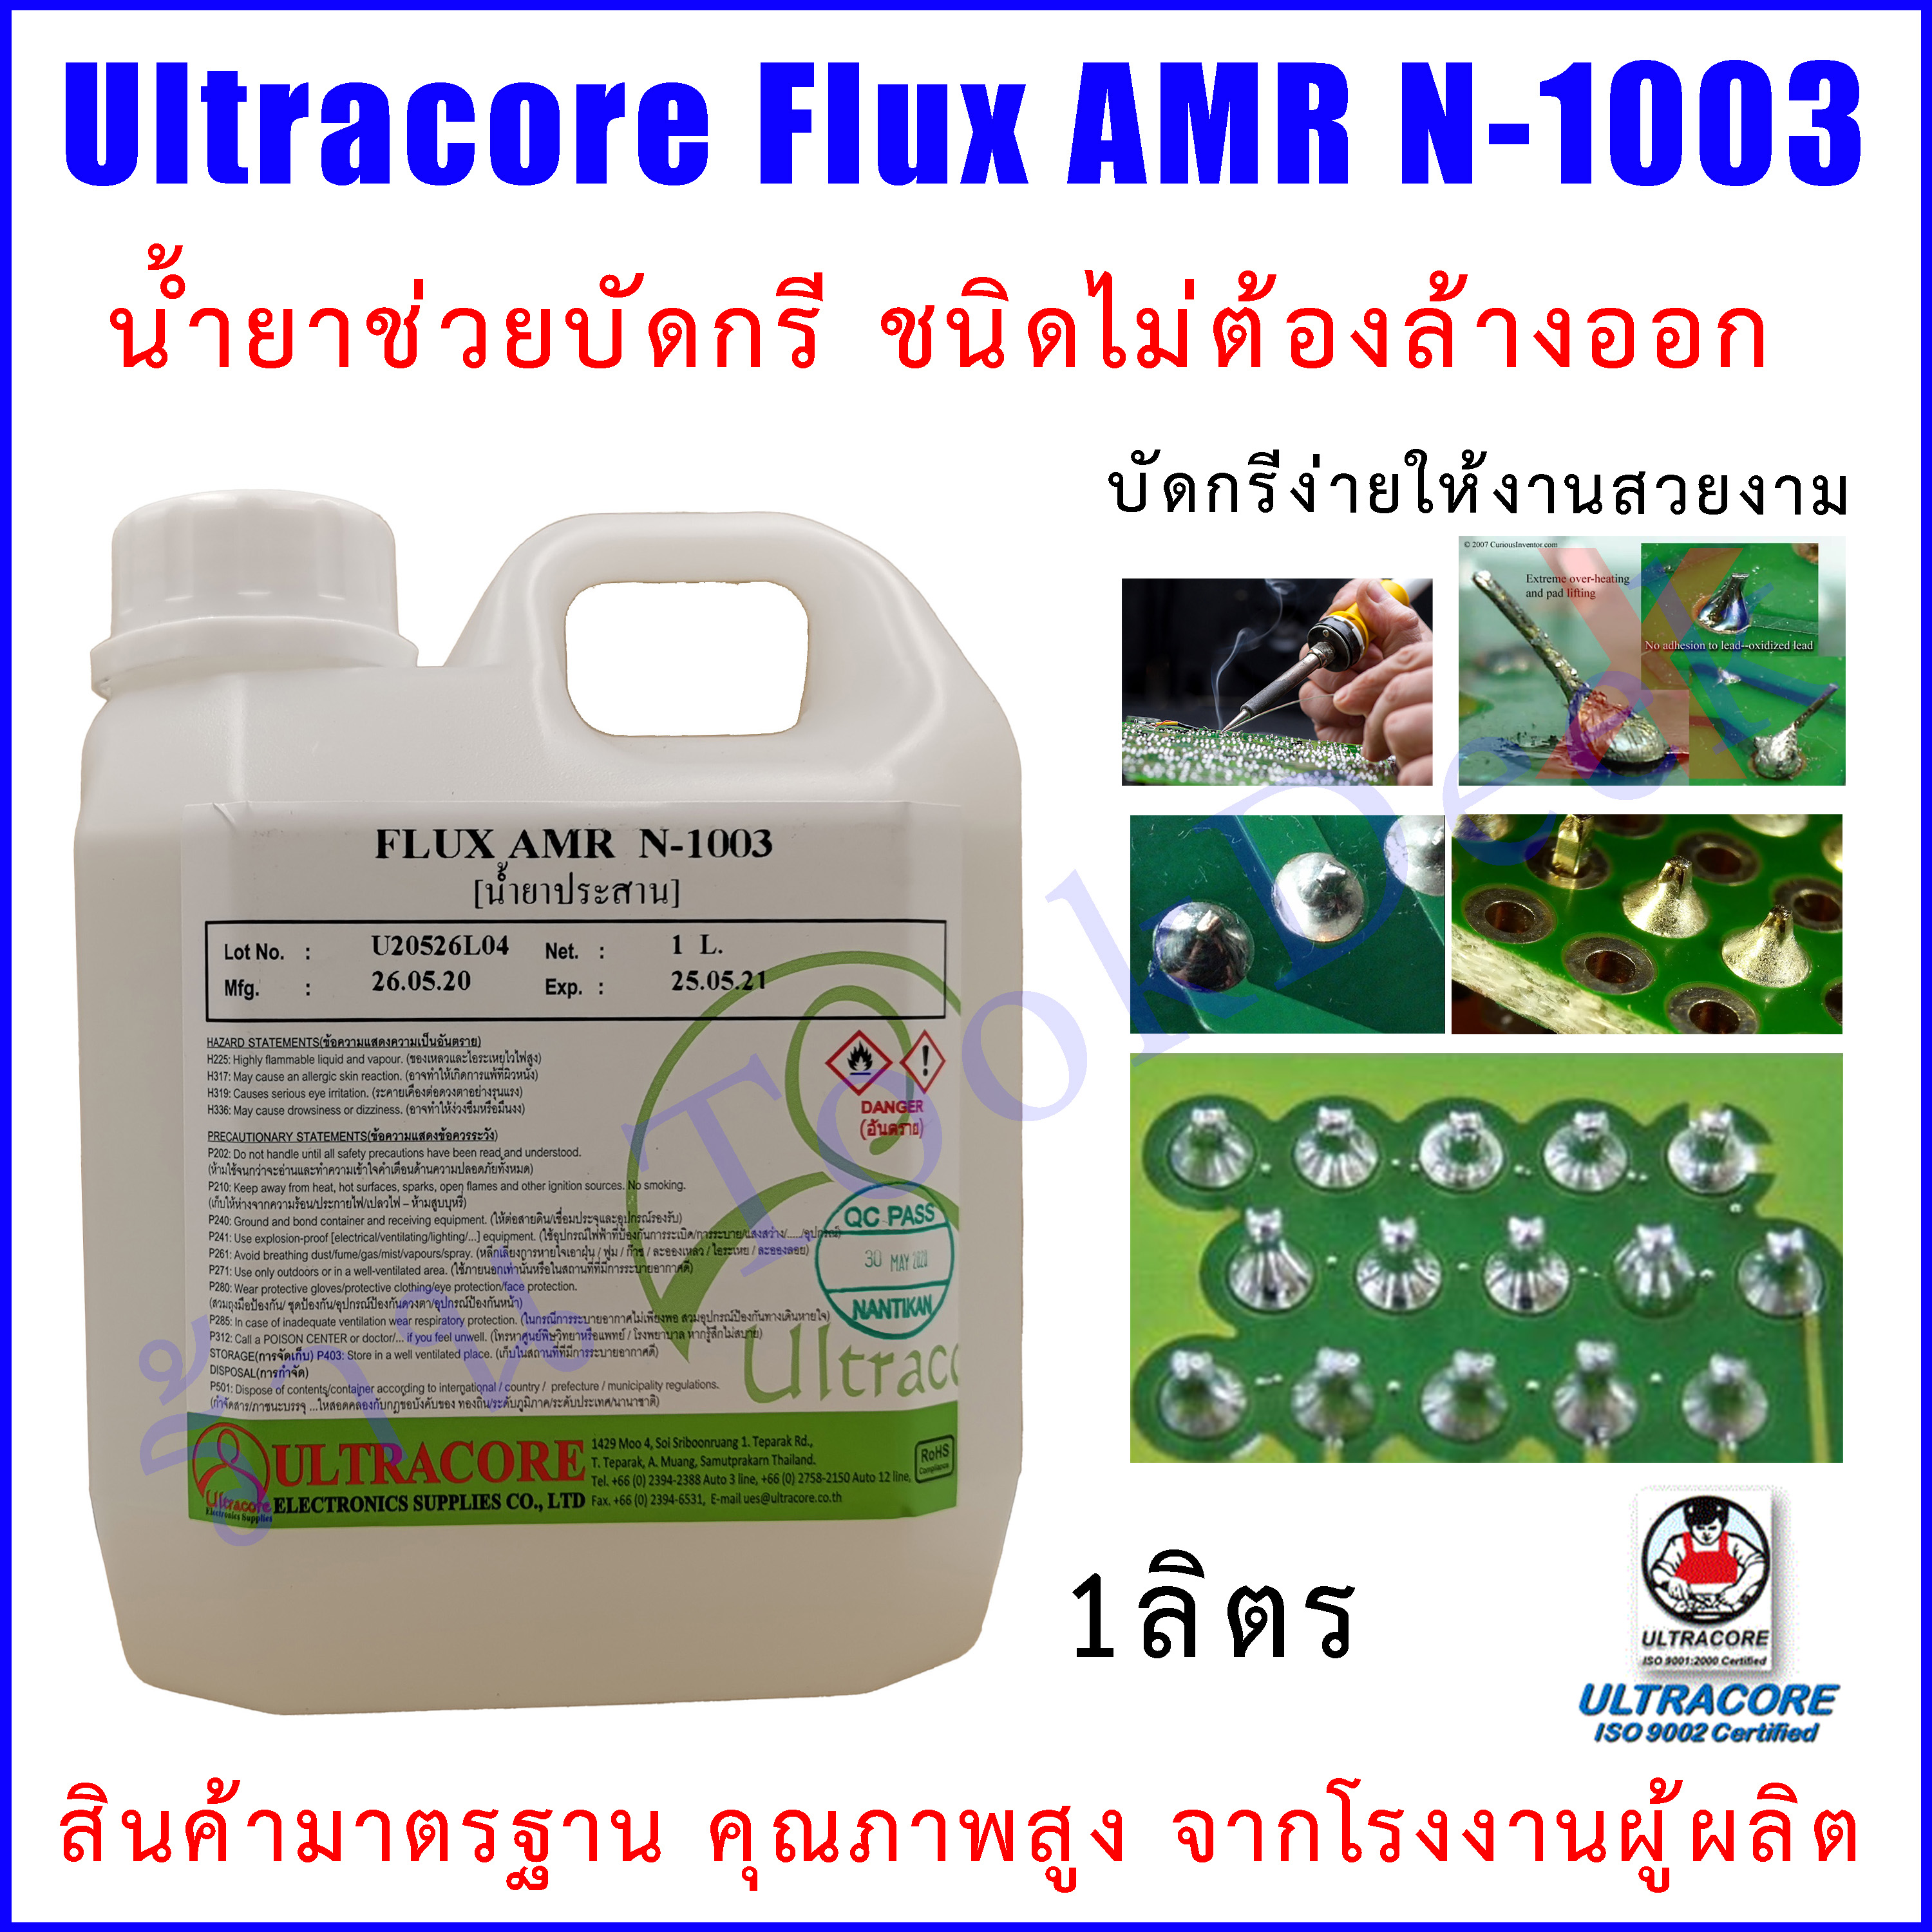 น้ำยาช่วยบัดกรี Ultracore Flux AMR N-1003 ขนาด 1Lt.